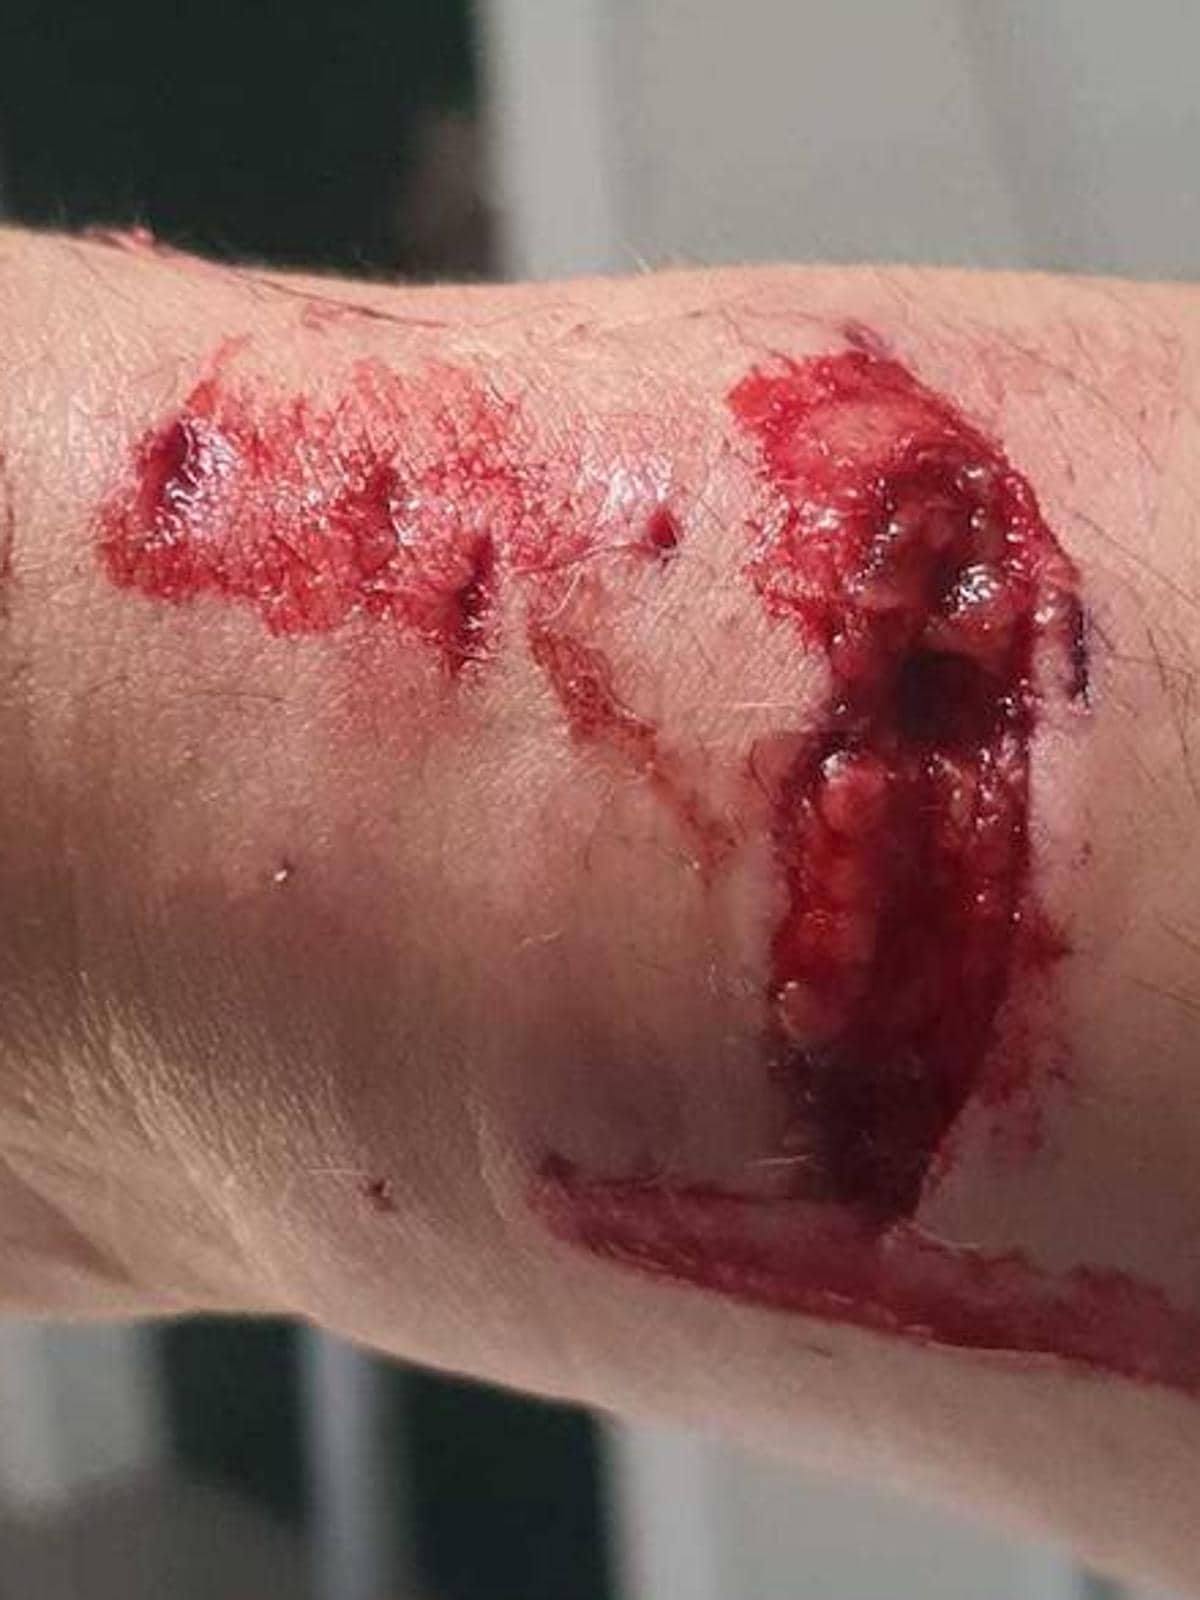 Heridas en el brazo del hombre provocadas por el ataque de los perros.